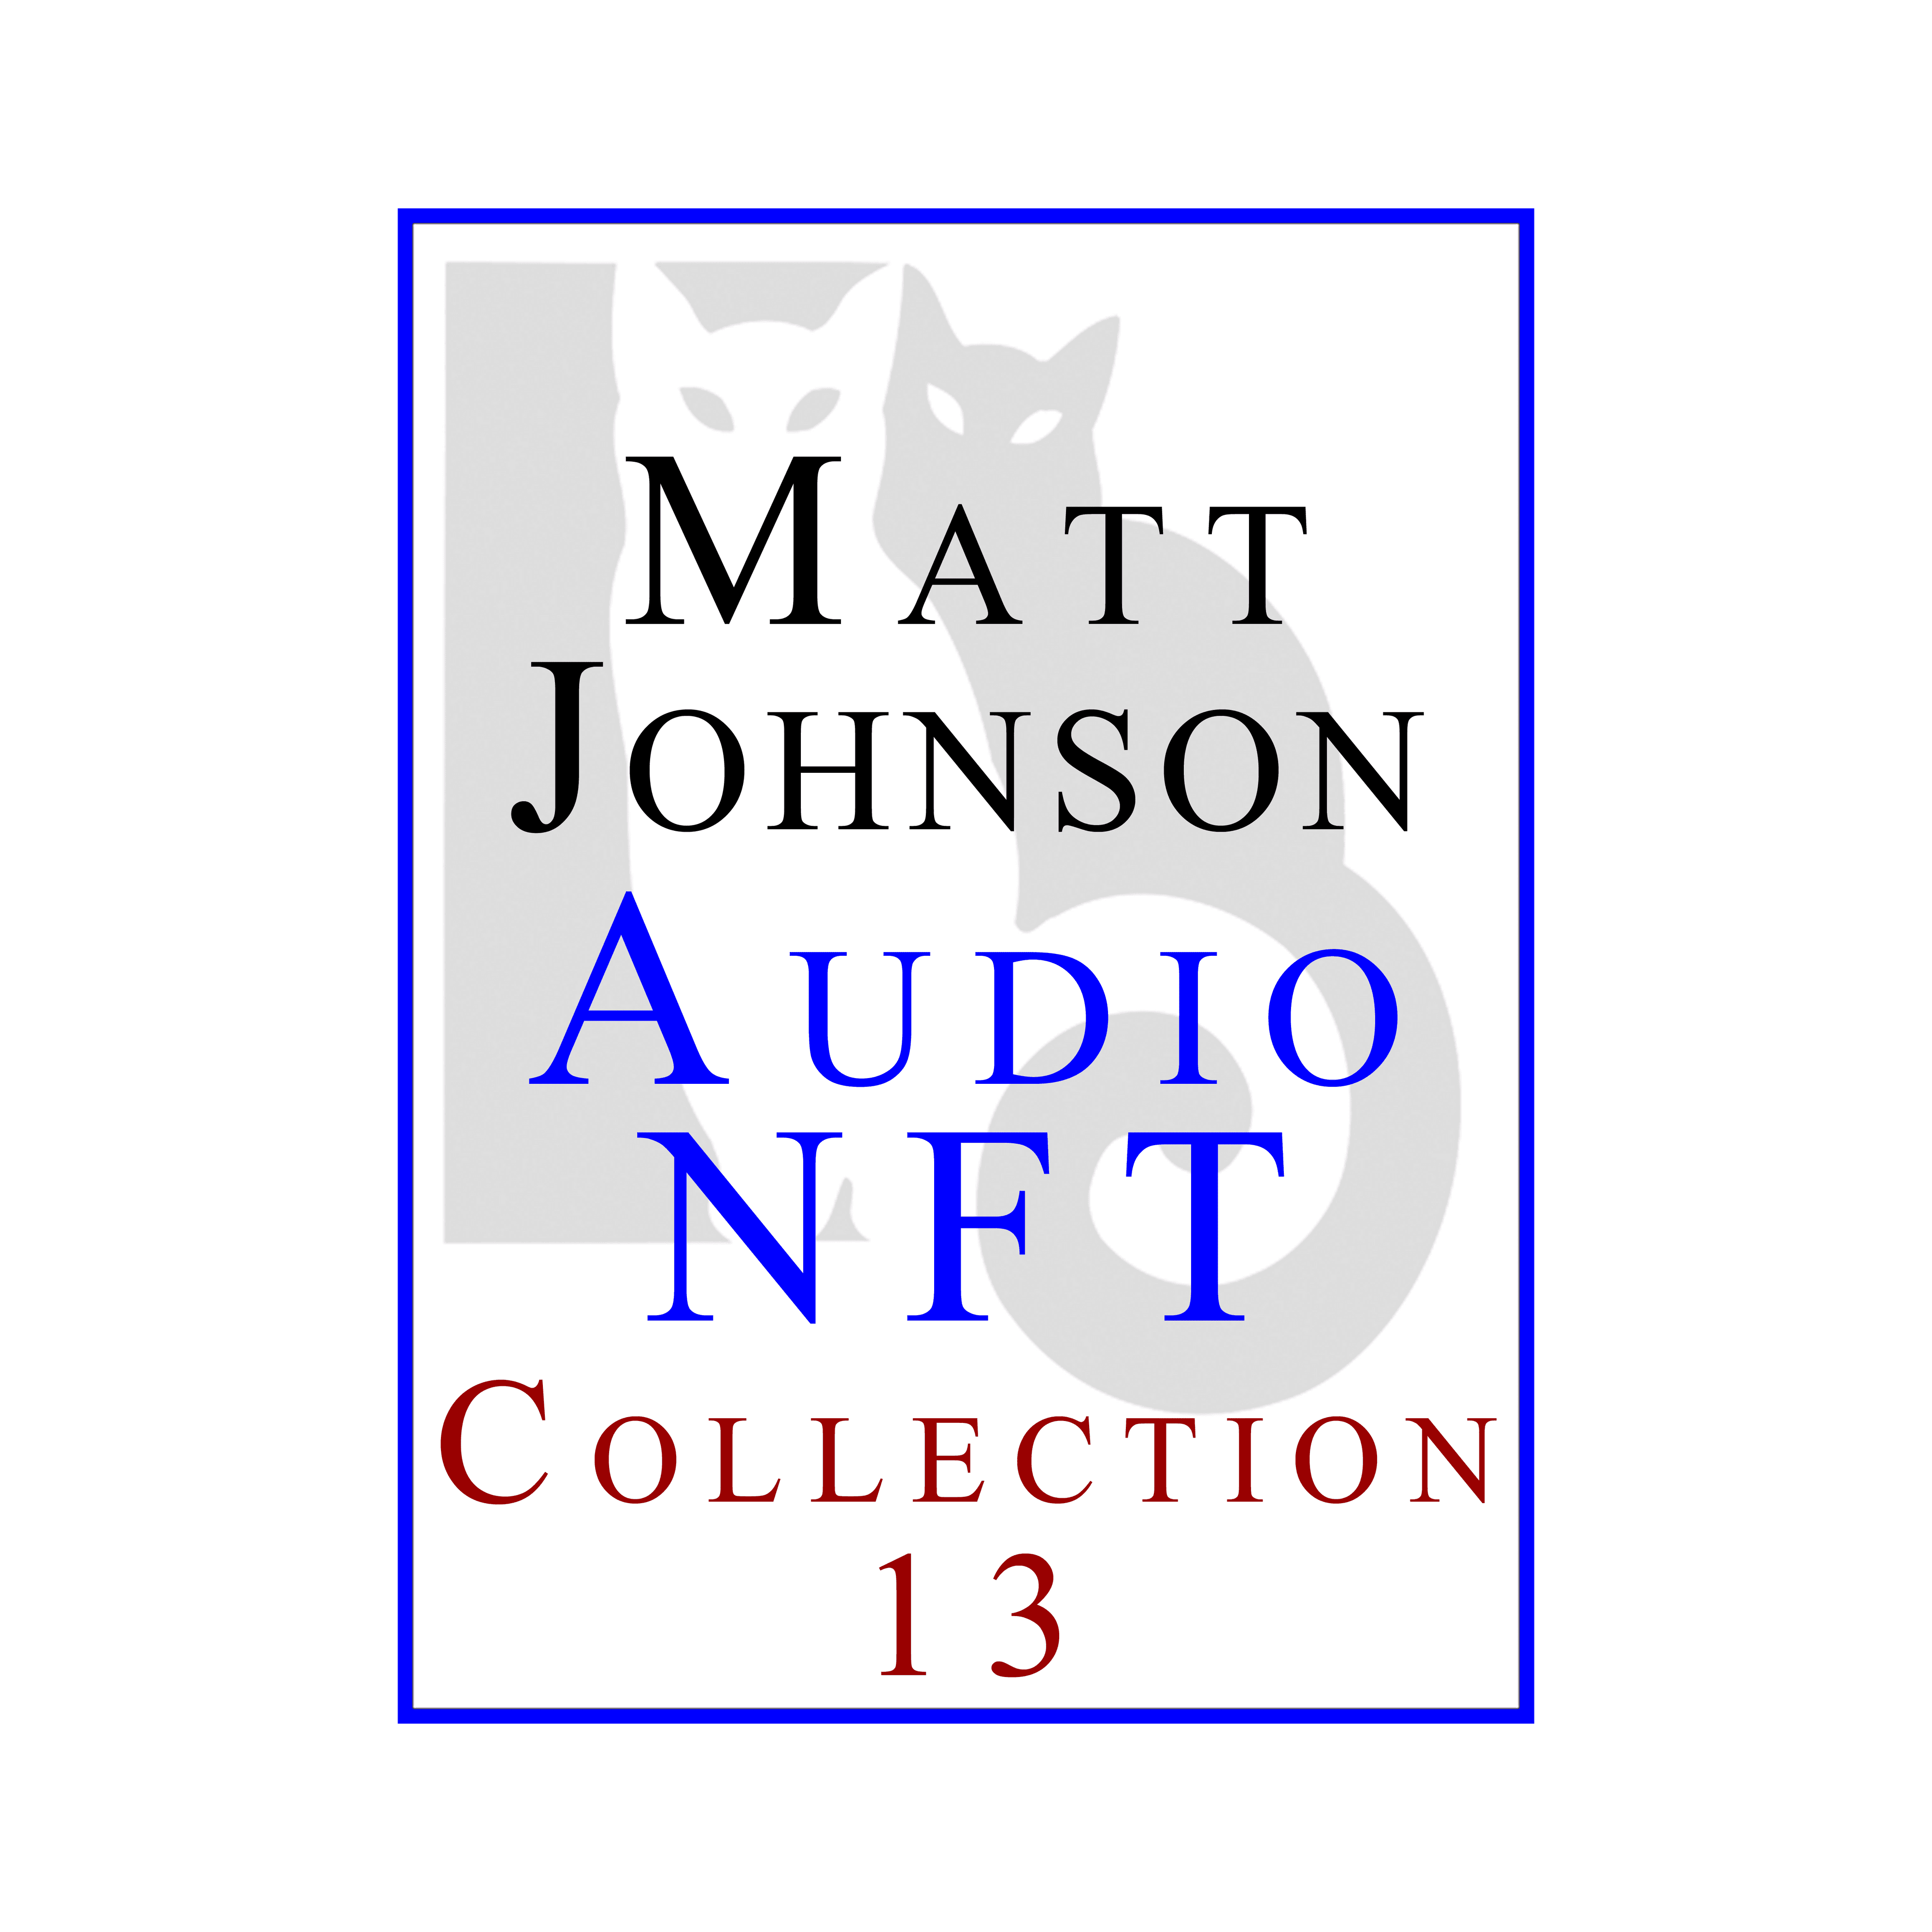 Matt Johnson Audio NFT ~ Collection 13